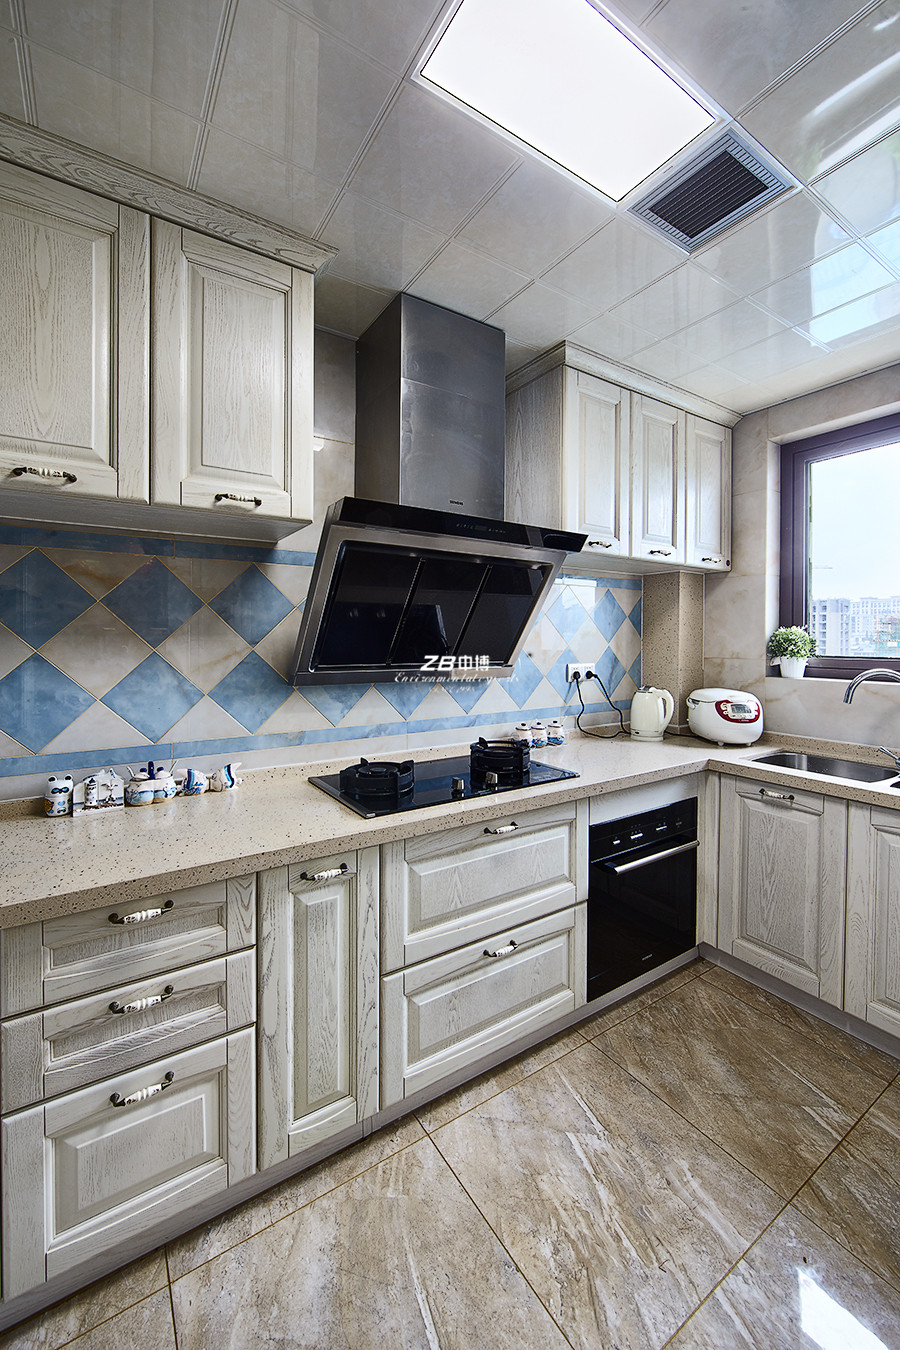 三居 白领 小资 地中海 厨房图片来自中博装饰在凯德龙湾138方地中海风情居家的分享